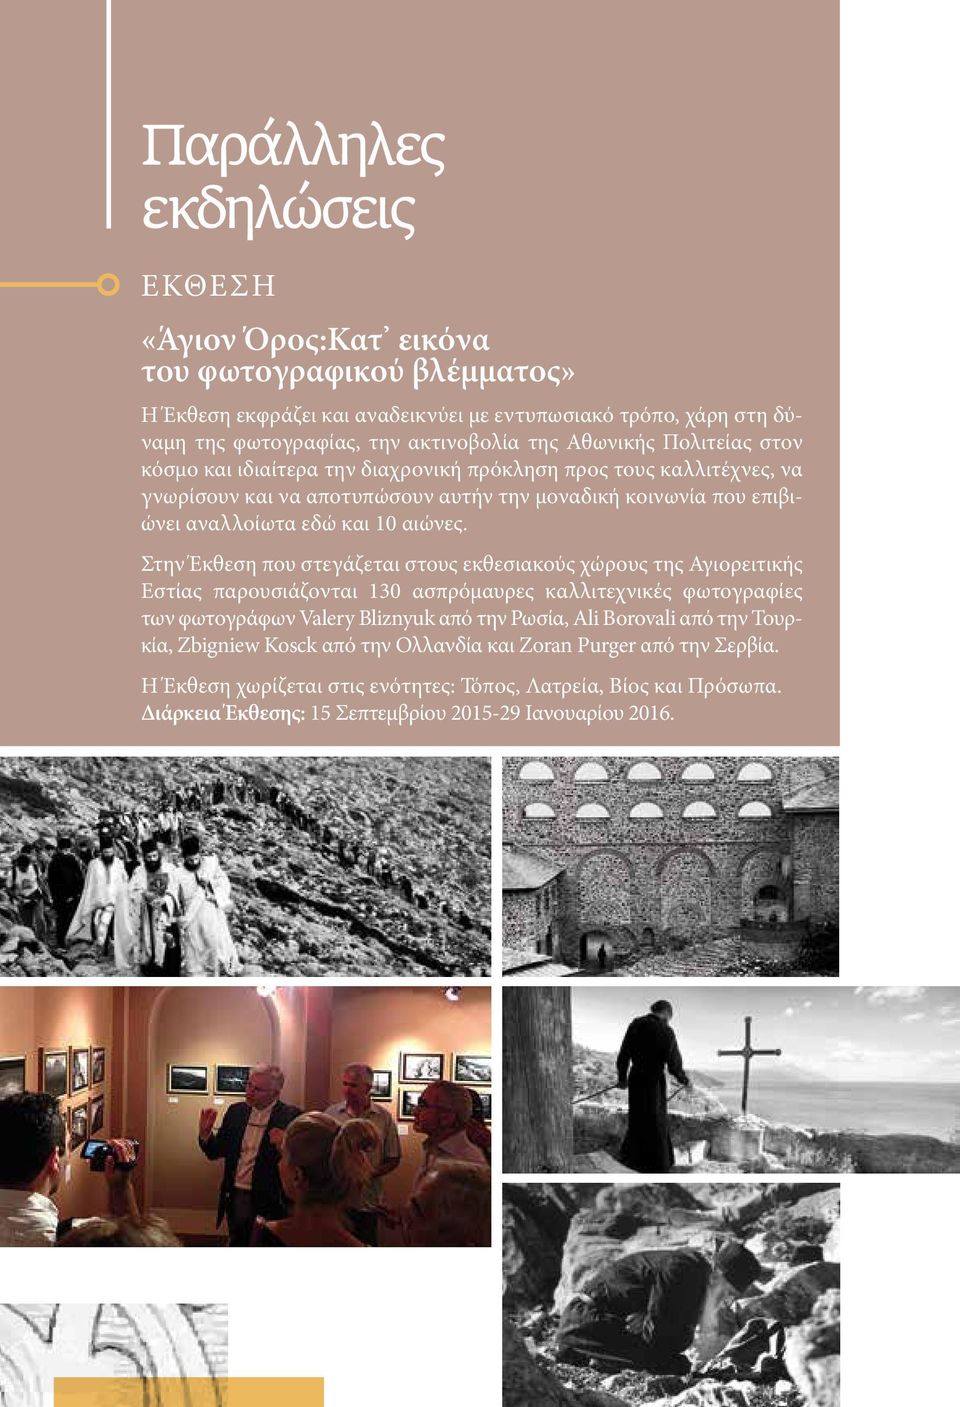 Στην Έκθεση που στεγάζεται στους εκθεσιακούς χώρους της Αγιορειτικής Εστίας παρουσιάζονται 130 ασπρόμαυρες καλλιτεχνικές φωτογραφίες των φωτογράφων Valery Bliznyuk από την Ρωσία, Ali Borovali από